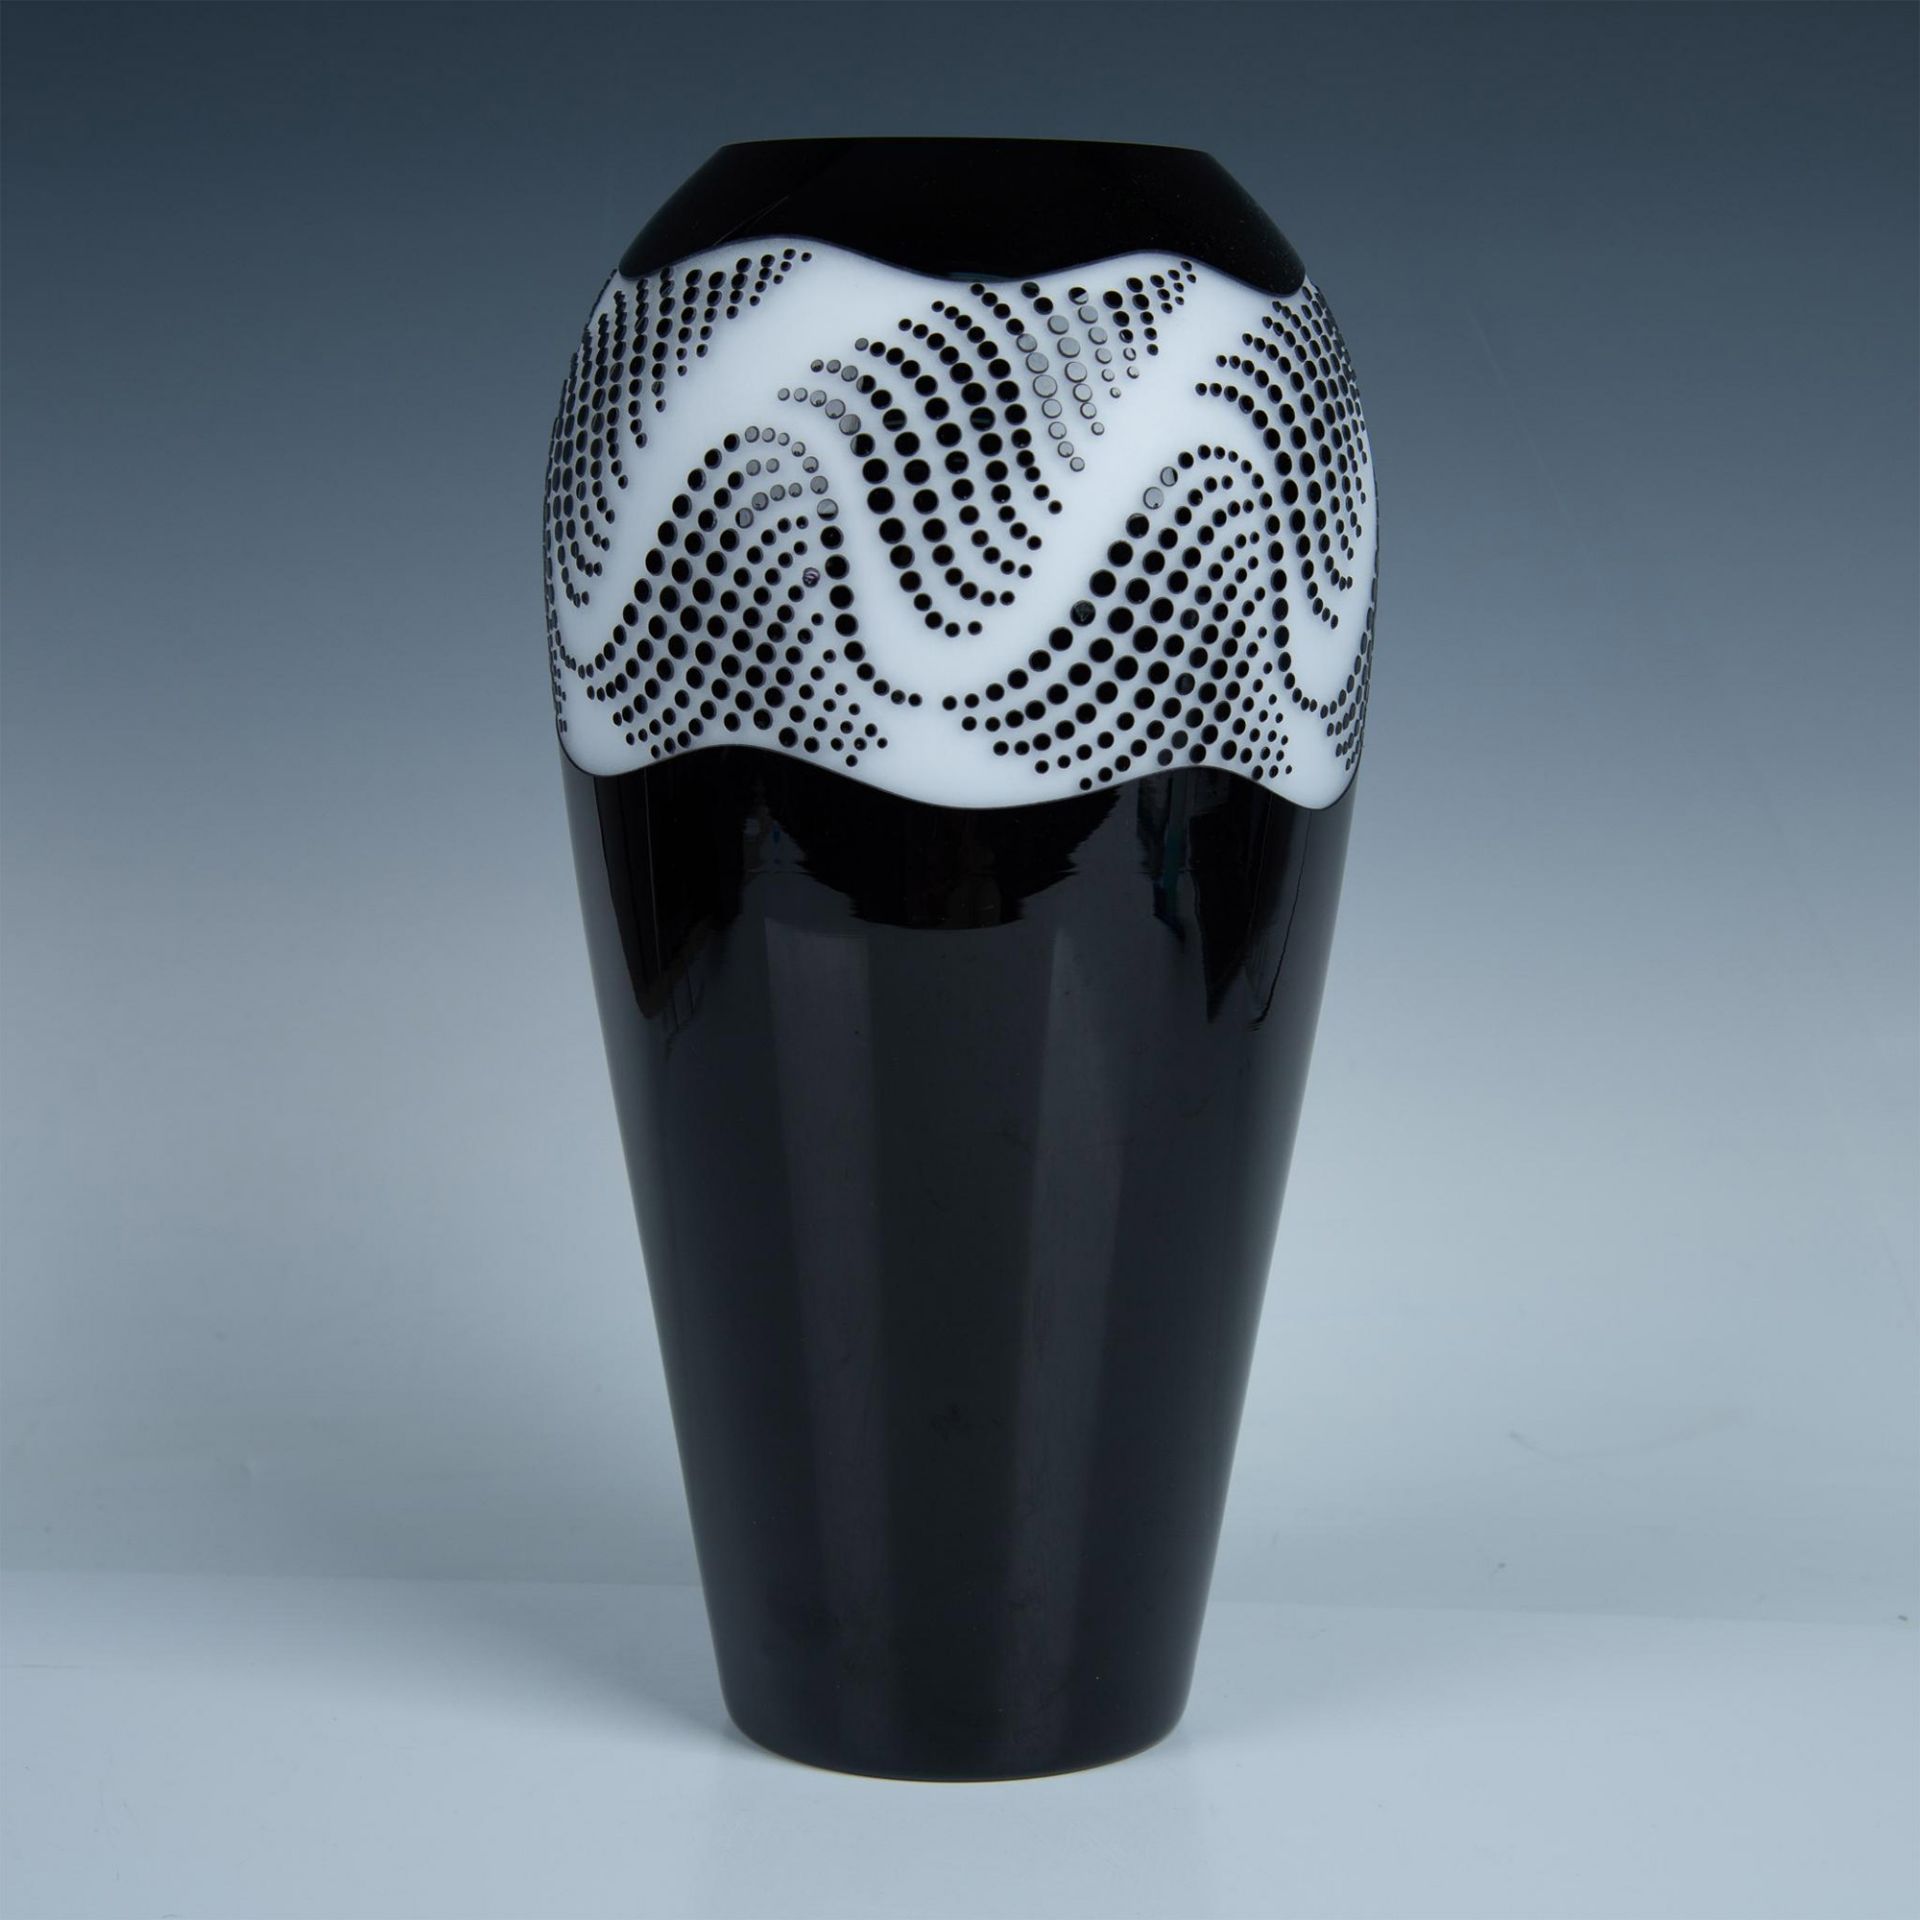 Sasaki Crystal Handcrafted Vase, Lynx Black & White